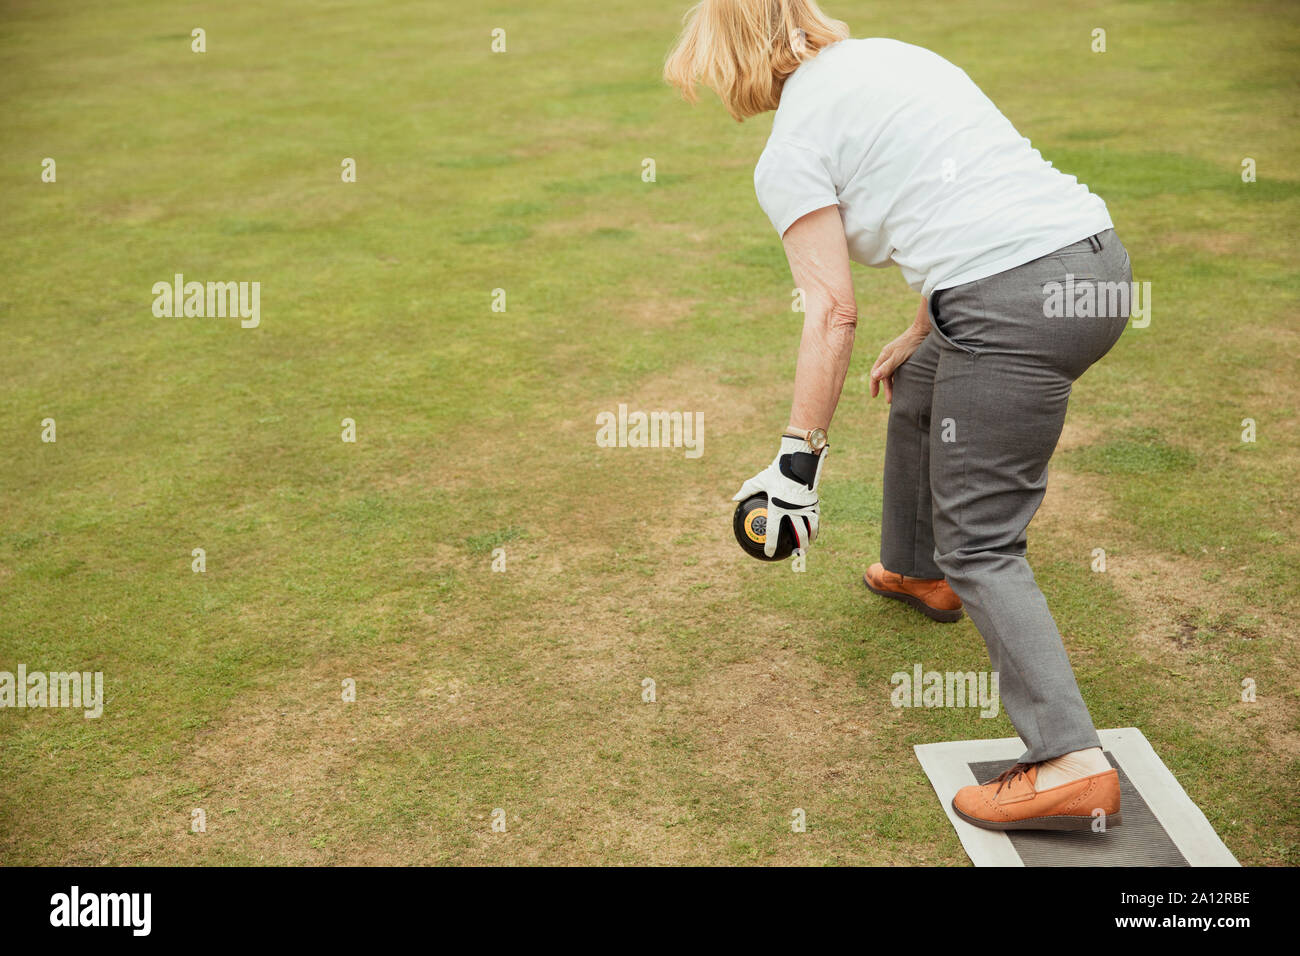 Eine Ansicht von hinten geschossen von einer älteren Frau mit einem Boccia, bereit, ihr Schuß in einem Lawn Bowling Spiel zu nehmen. Stockfoto